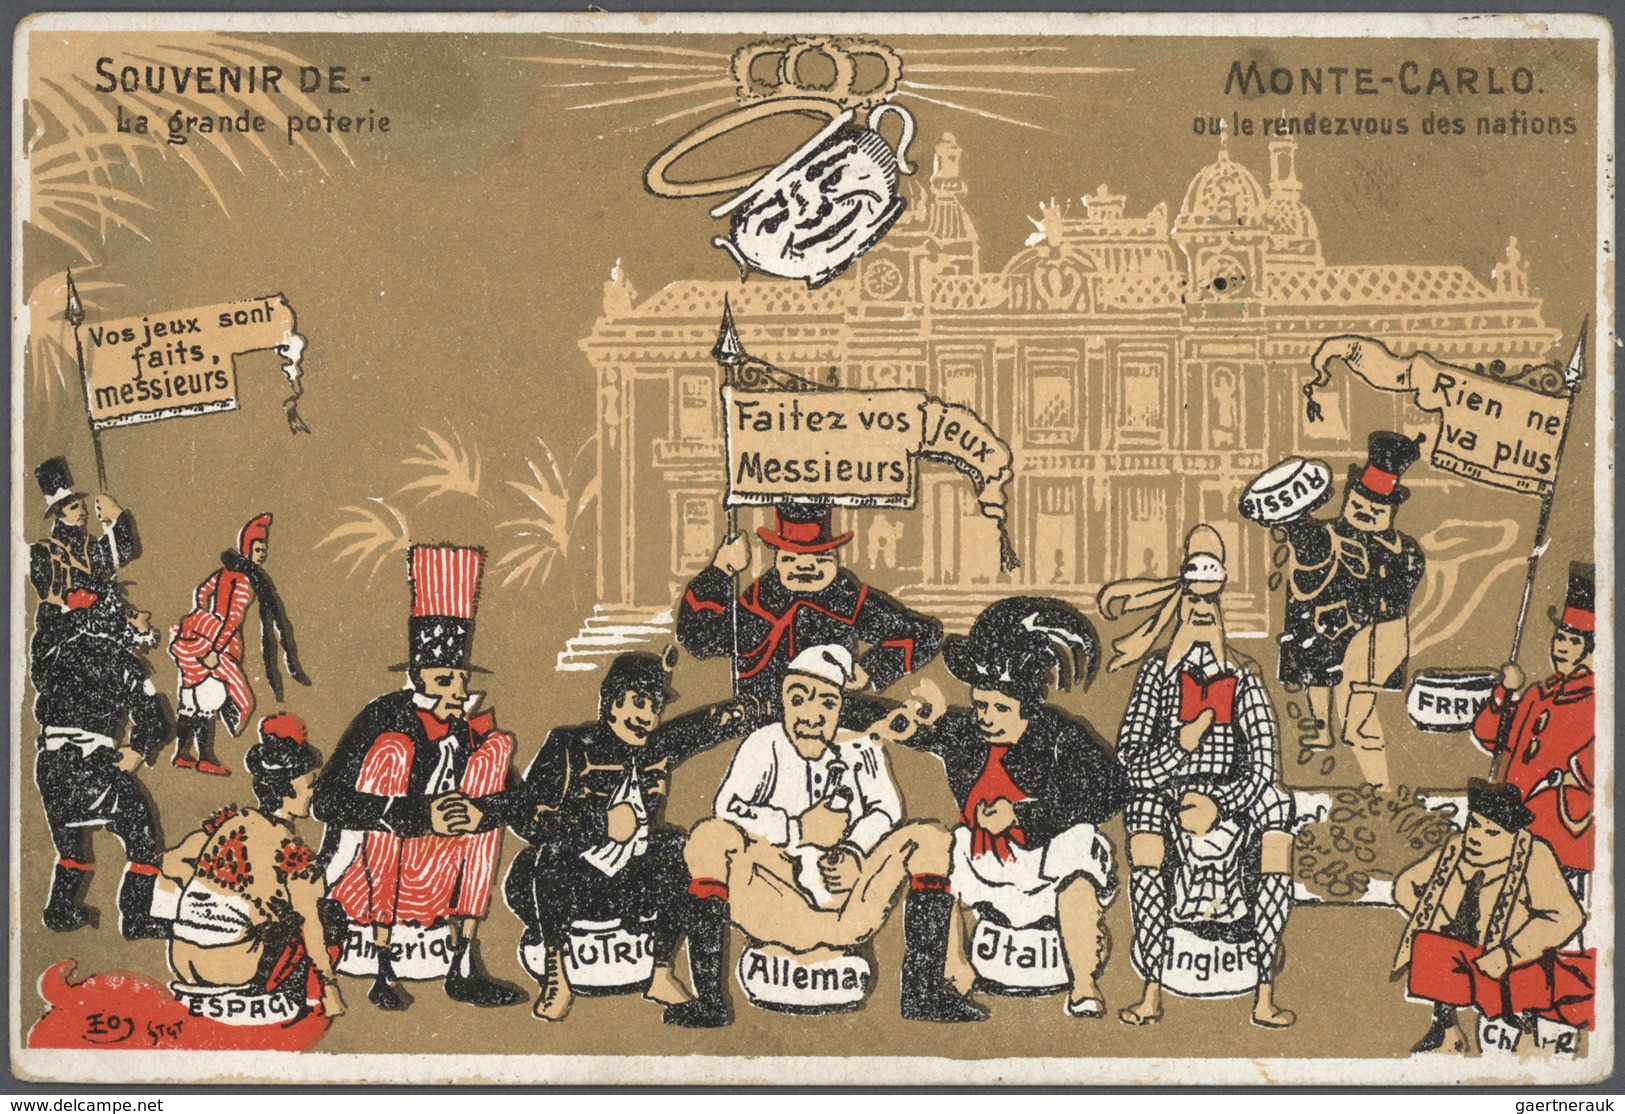 27392 Monaco - Besonderheiten: 1895/1920, Stock of around 1,700 historical picture postcards in common com